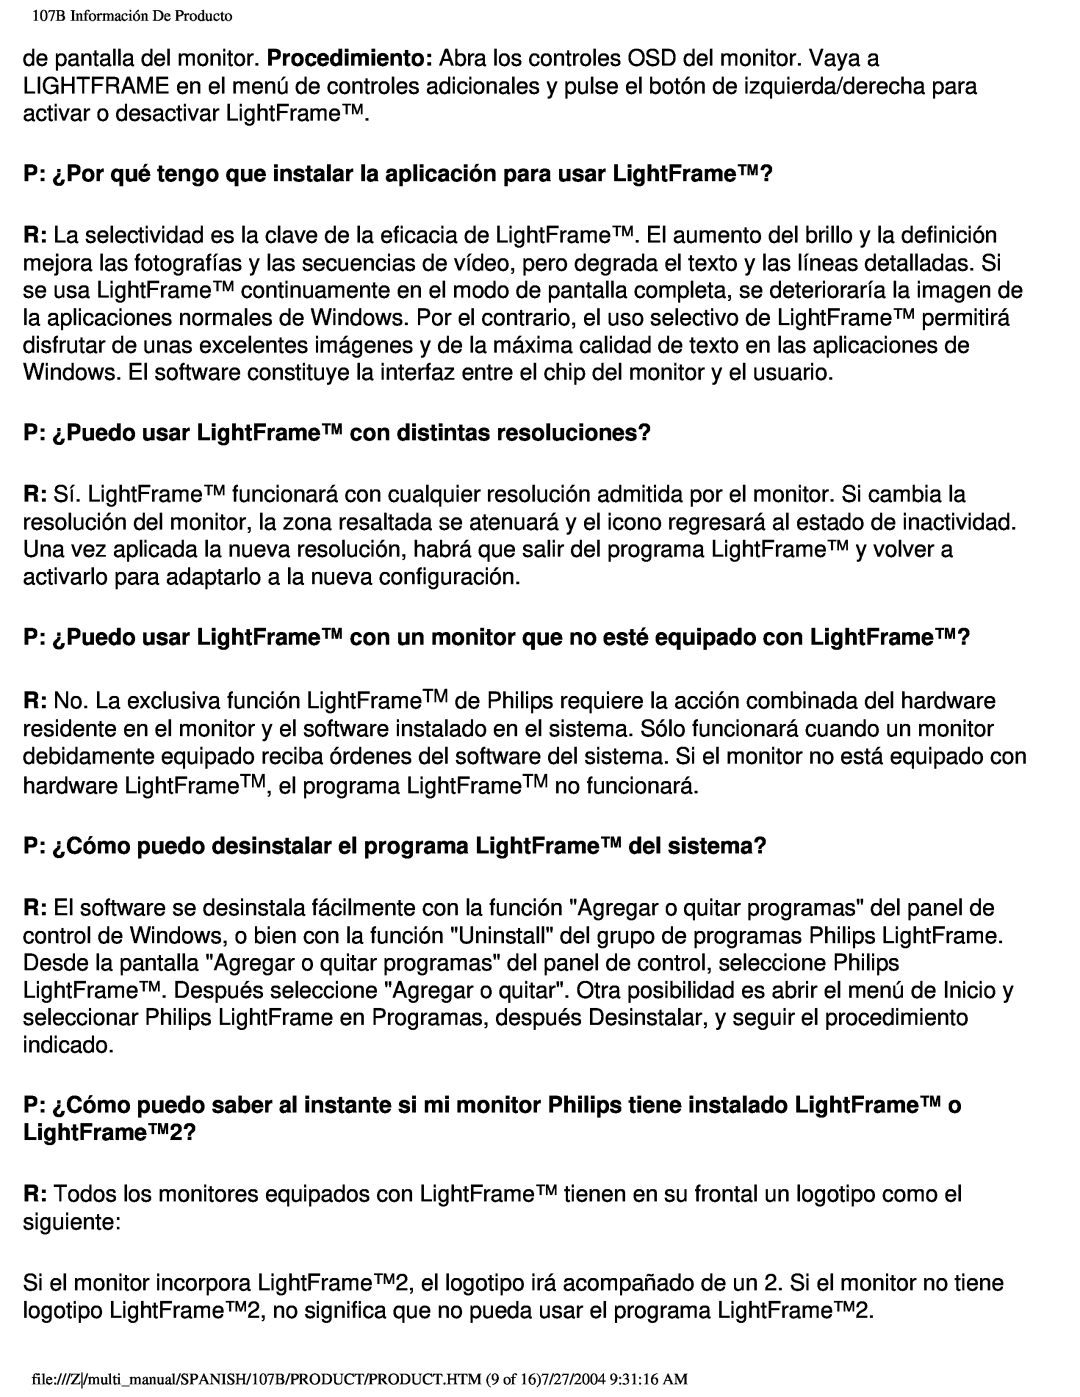 Philips 107B user manual P ¿Por qué tengo que instalar la aplicación para usar LightFrame? 